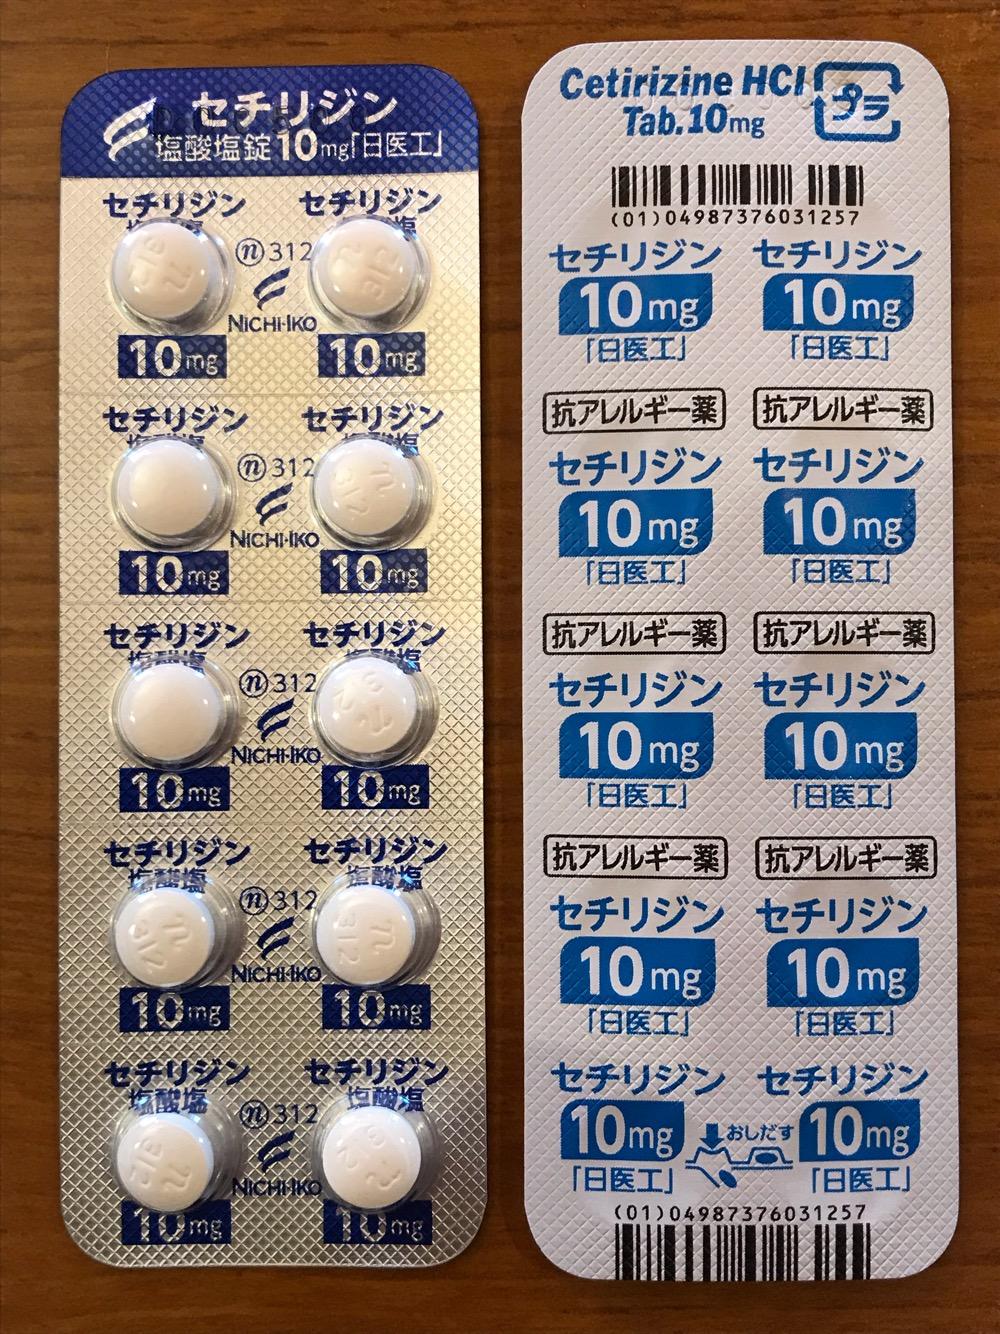 セチリジン 塩酸塩錠 10mg 日医工 抗アレルギー薬